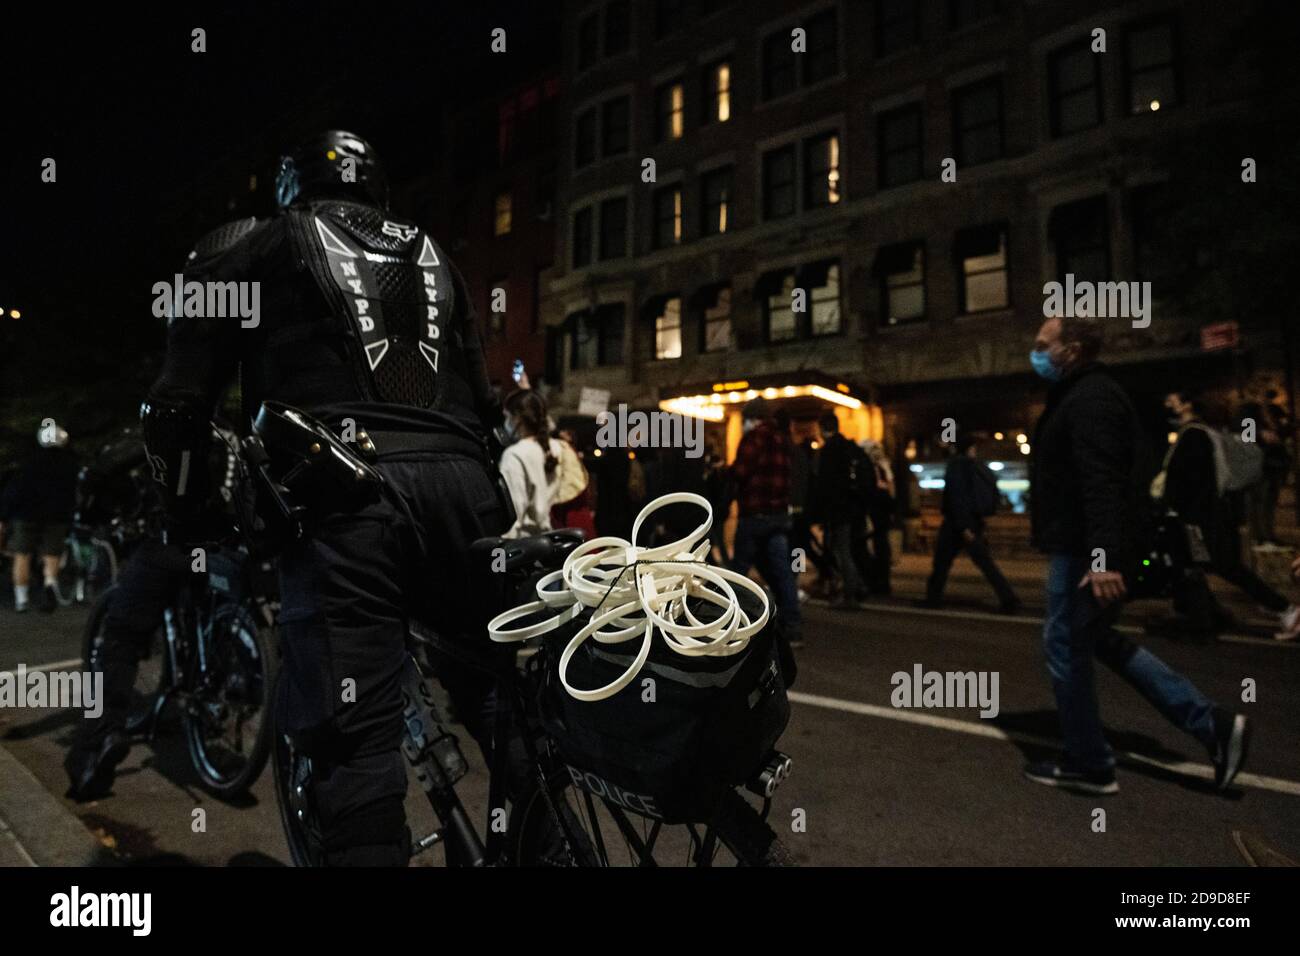 Nueva York, Nueva York, EE.UU. 4 Nov 2020. Restricciones de plástico en una bicicleta de policía mientras cientos de manifestantes anti-Trump marchan por el barrio de Greenwich Village de la ciudad de Nueva York mientras Estados Unidos espera los resultados de sus elecciones presidenciales Foto de stock